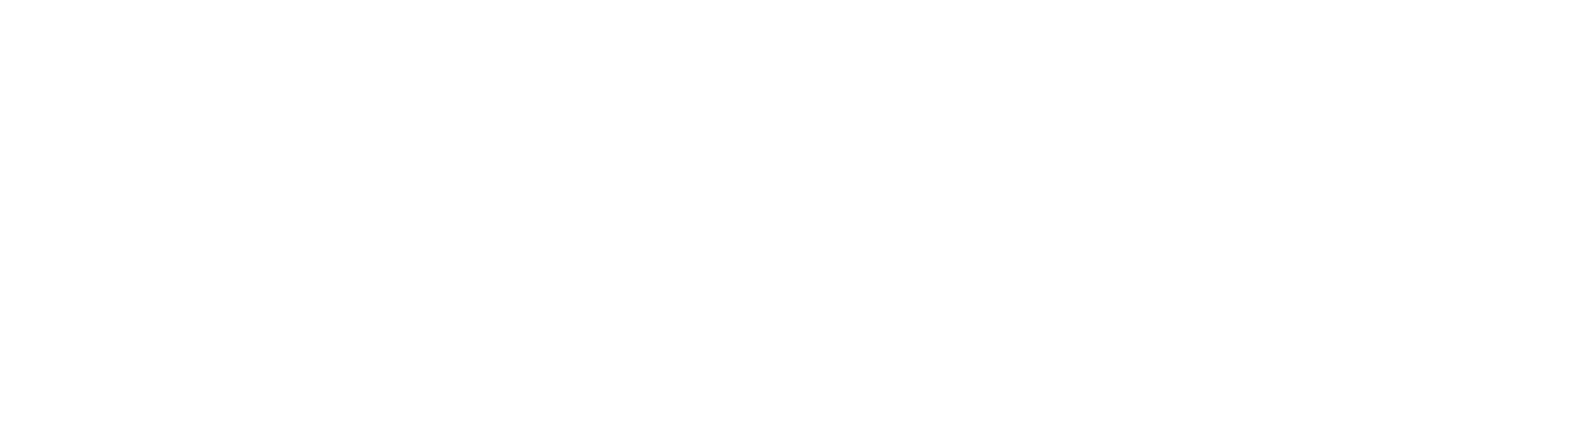 Distell Group logo grand pour les fonds sombres (PNG transparent)